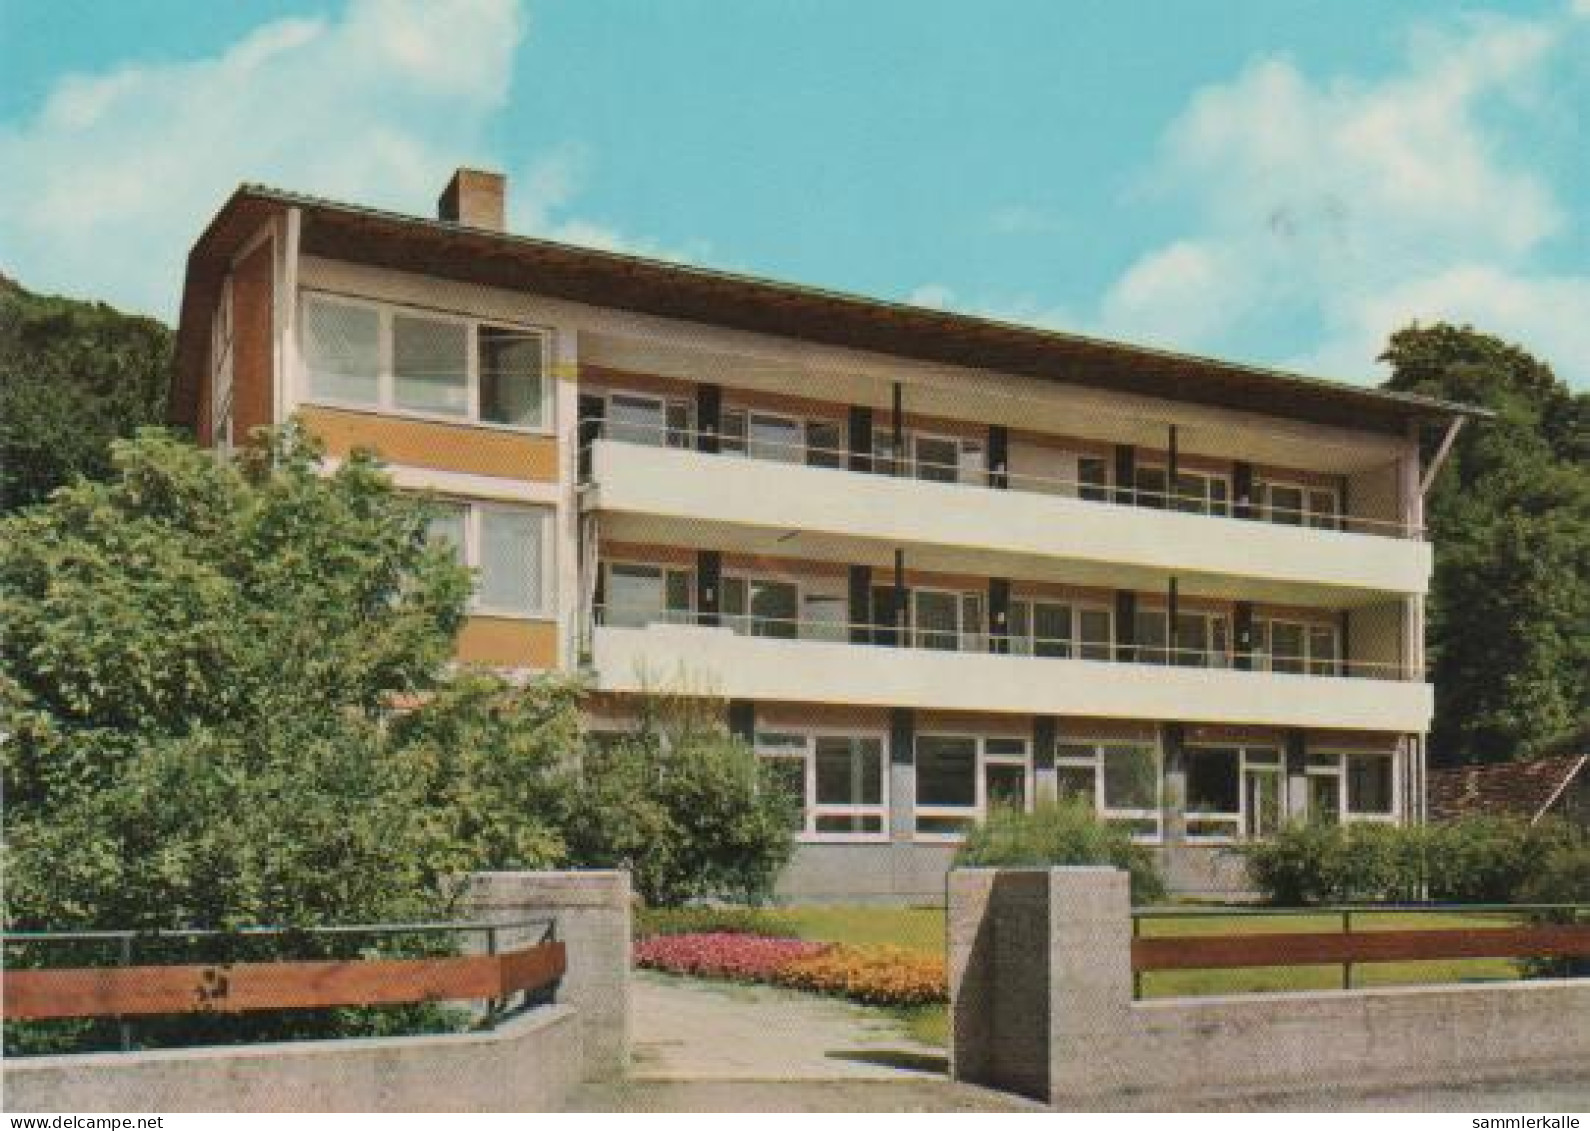 1160 - Bad Ditzenbach - Haus Hiltenburg Und St. Raphael - 1985 - Goeppingen